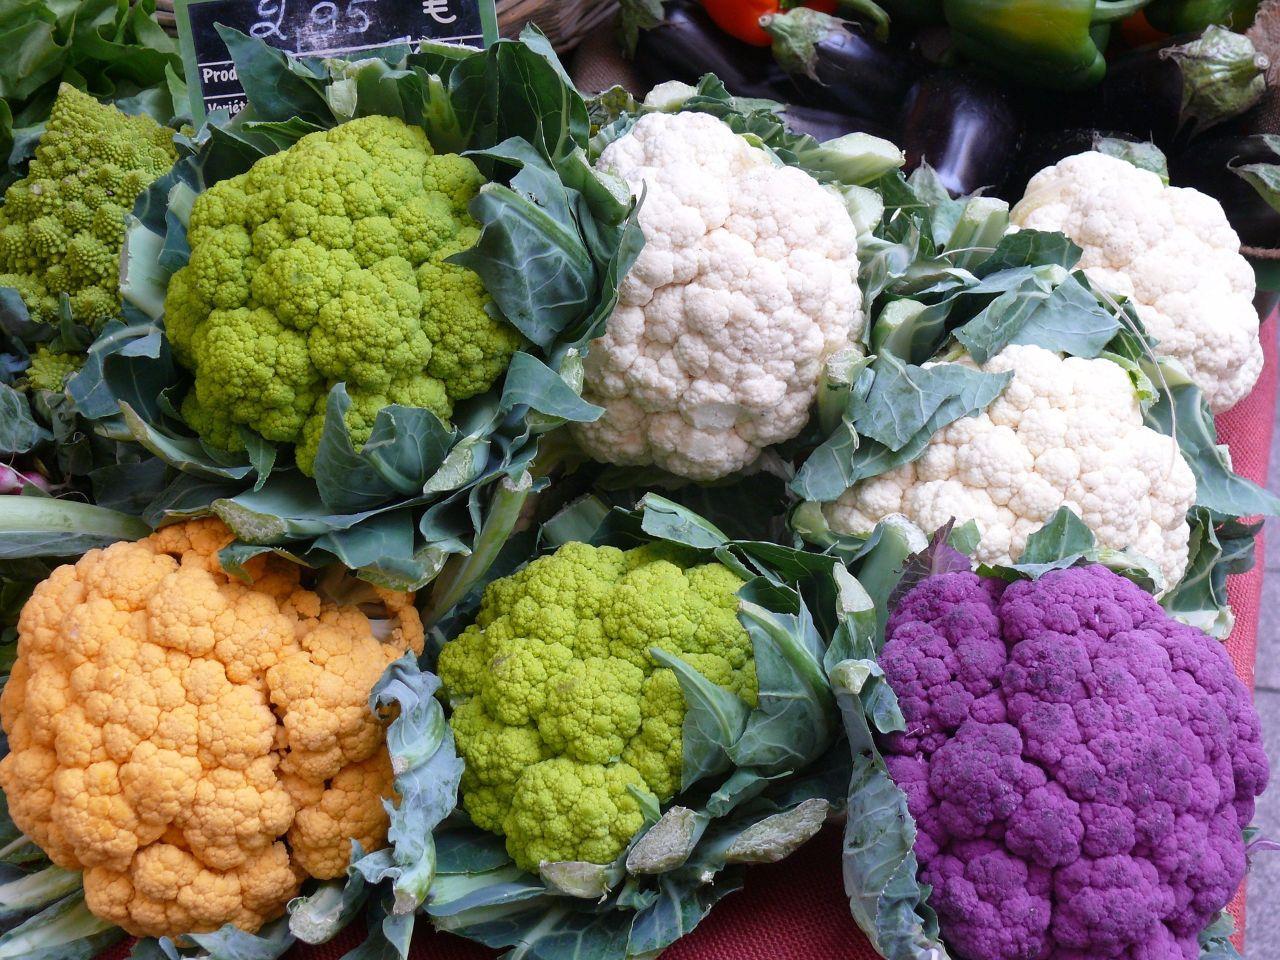 美国风靡彩色花椰菜健康料理 纽约餐厅五彩菜花沙拉卖到脱销